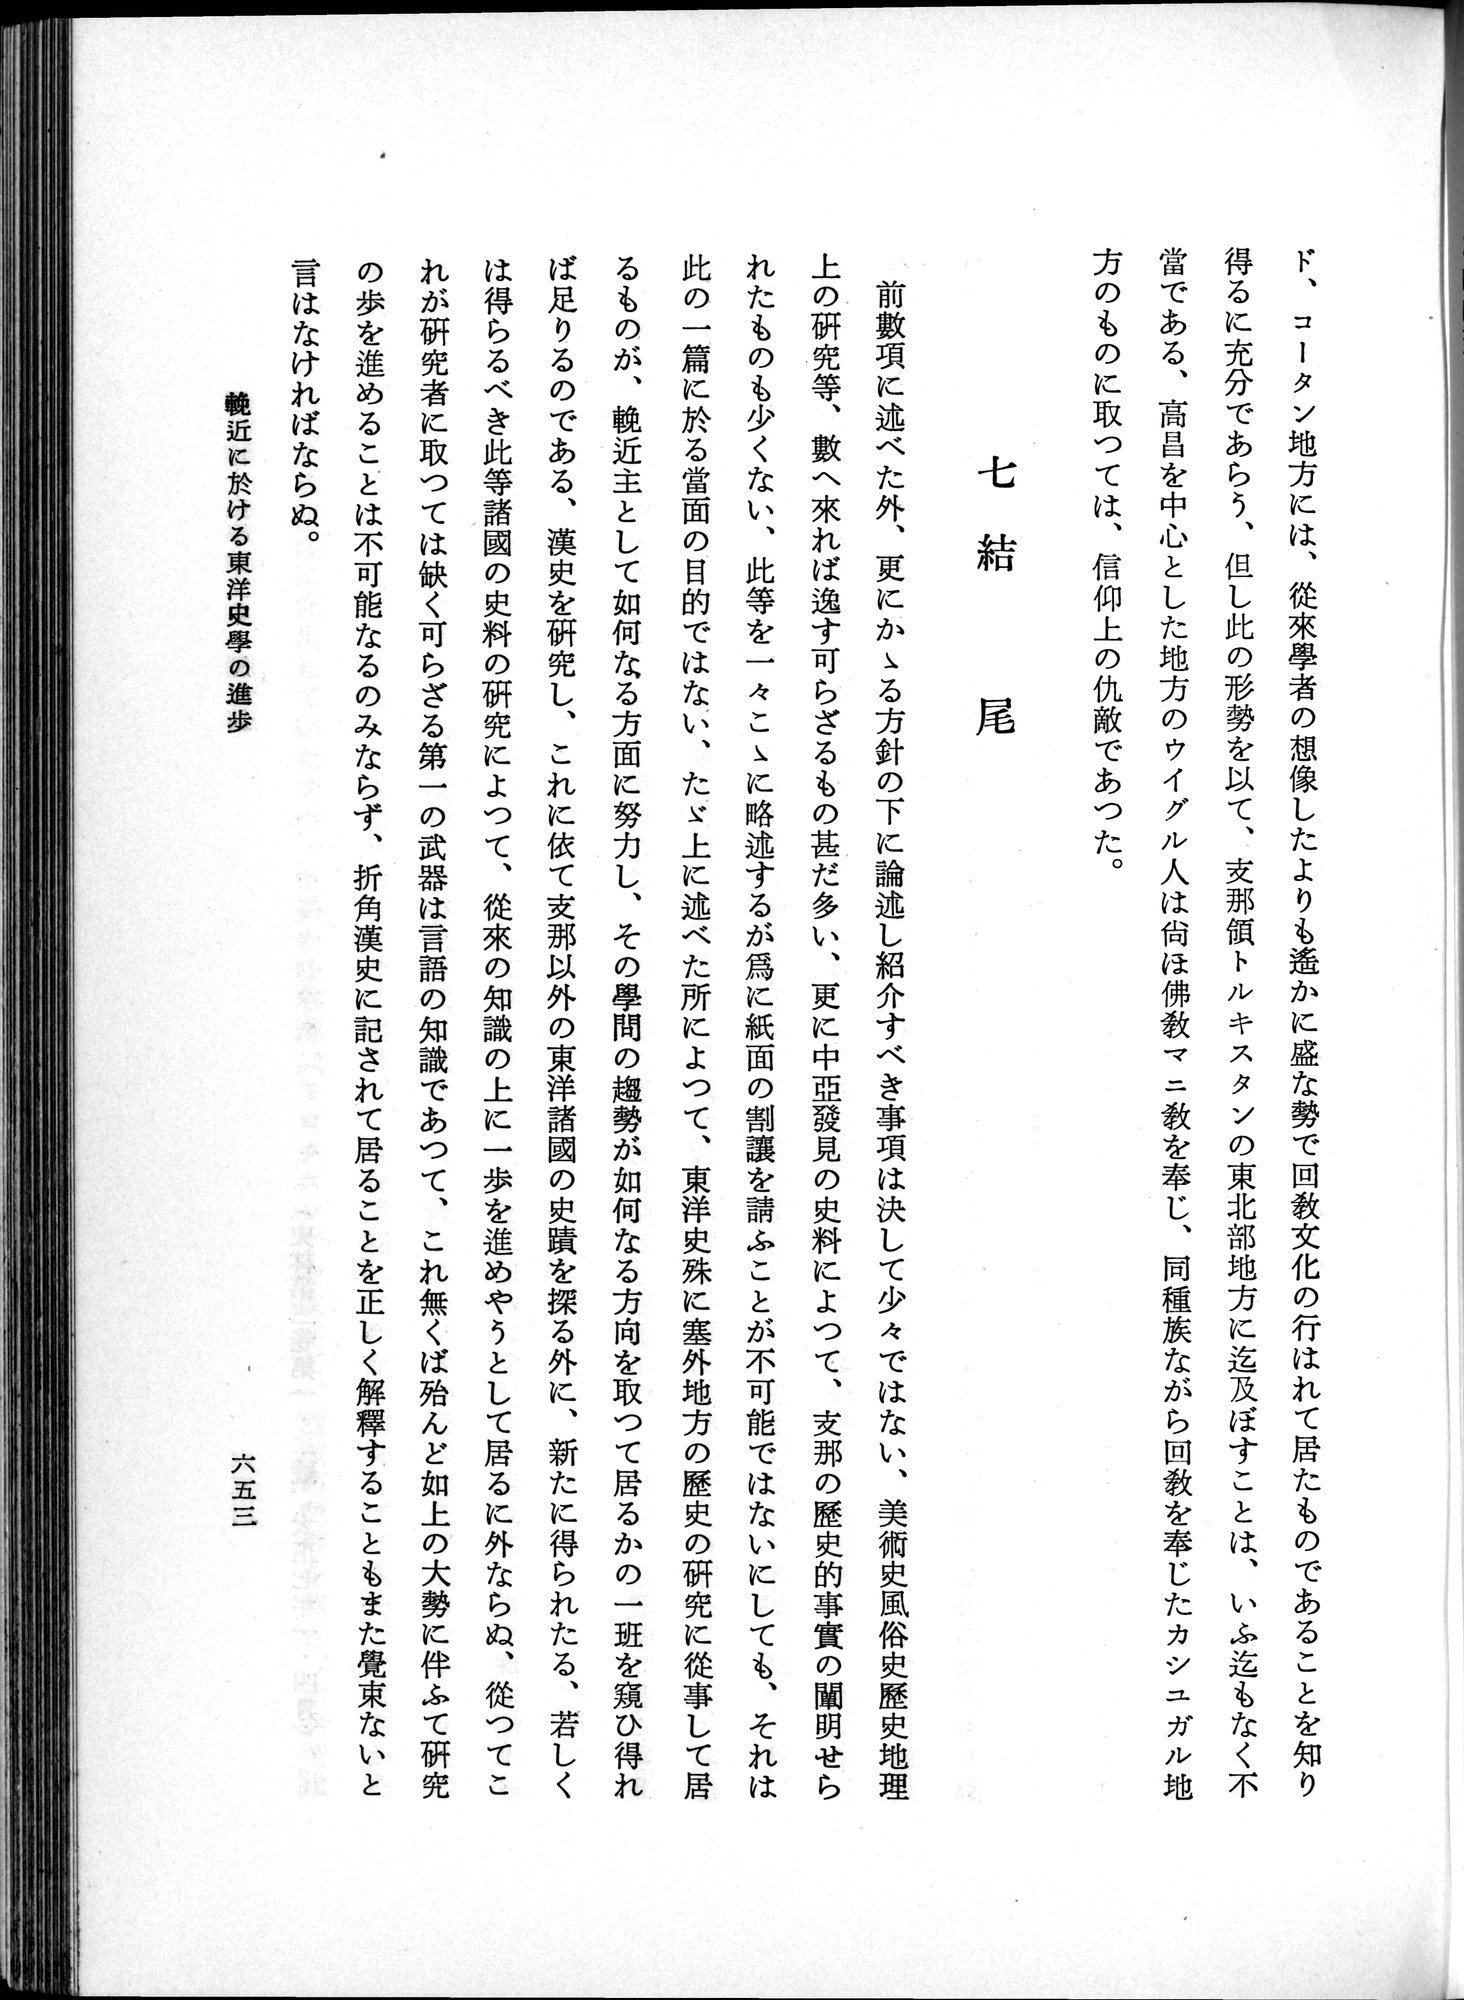 羽田博士史学論文集 : vol.1 / Page 691 (Grayscale High Resolution Image)